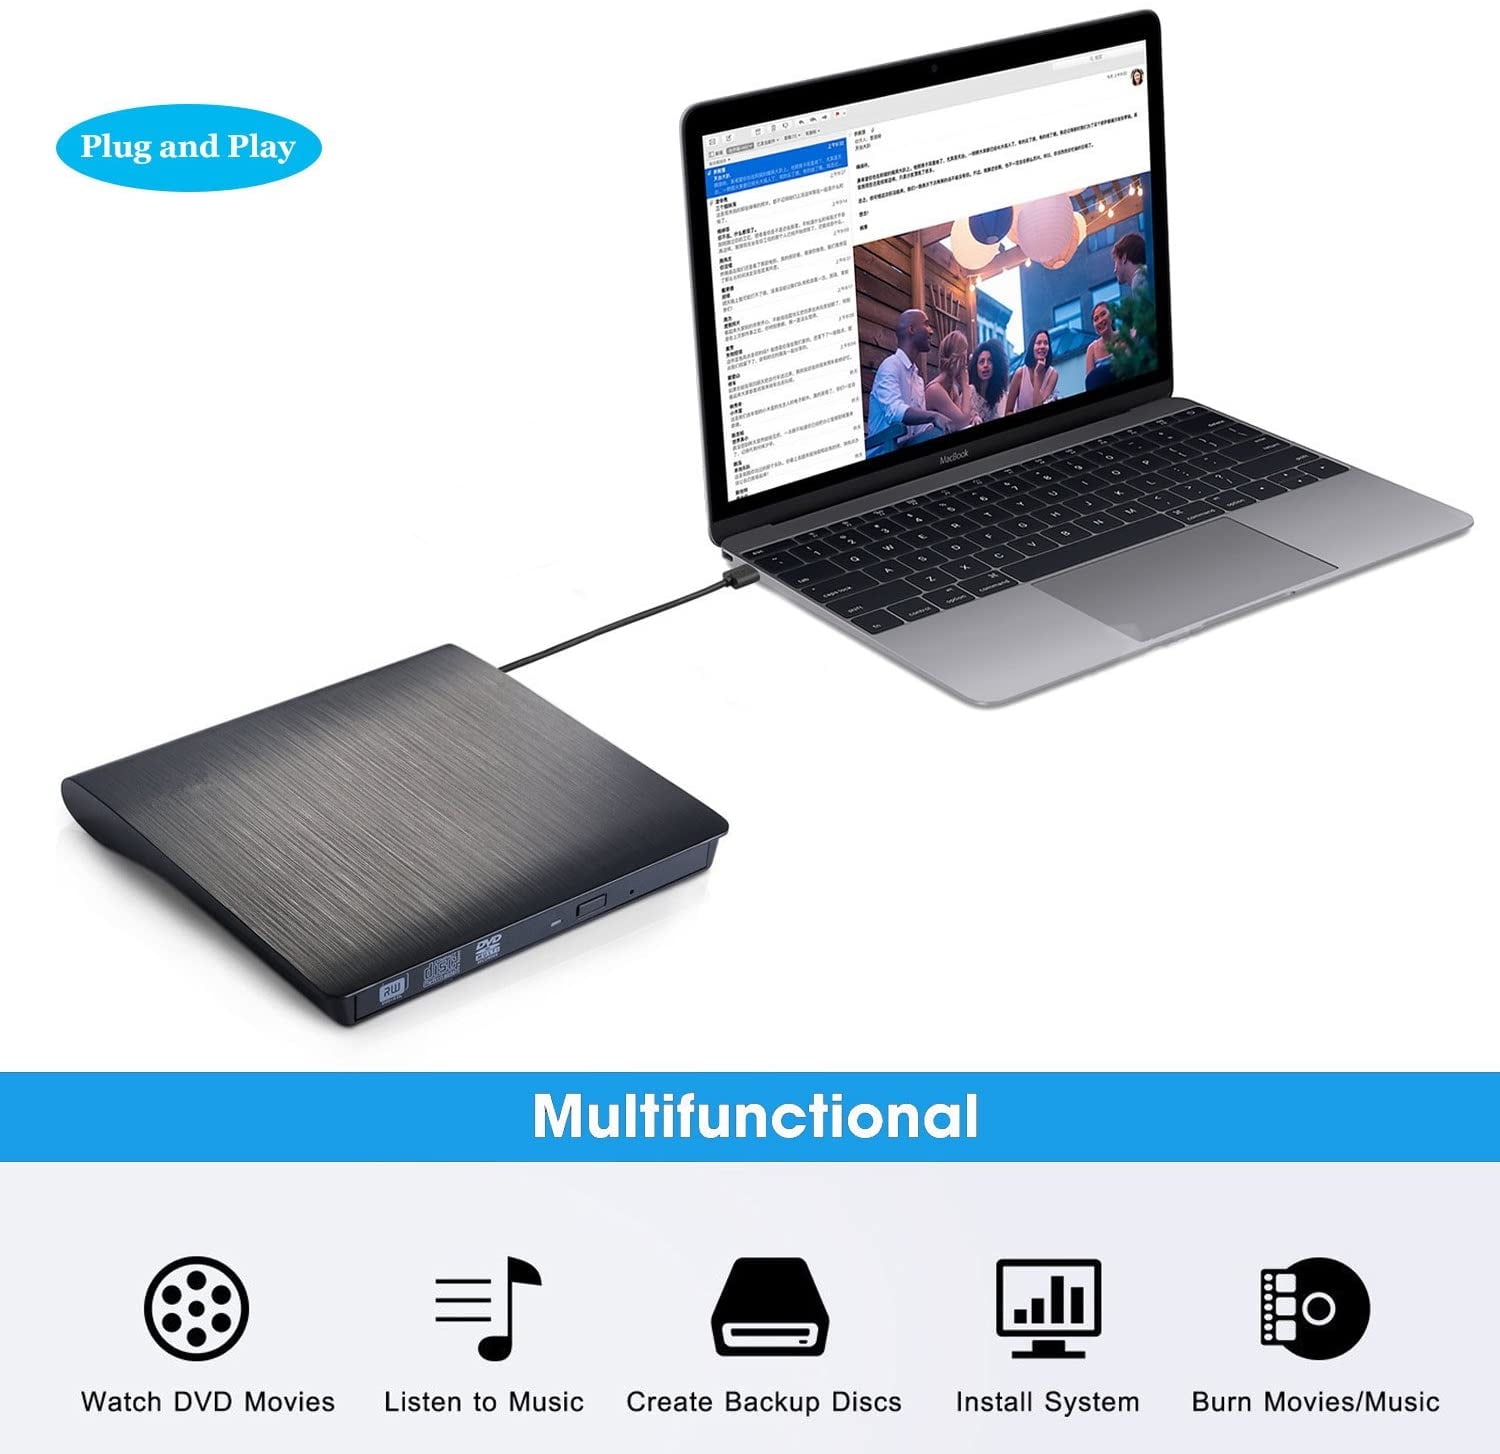 Lecteur de Cd / DVD externe pour ordinateur portable, Usb 3.0 Ultra-slim  Portable Burner Writer Compatible avec Mac Macbook Pro / air Imac Desktop  Windows 7/8/10 / xp / vista (